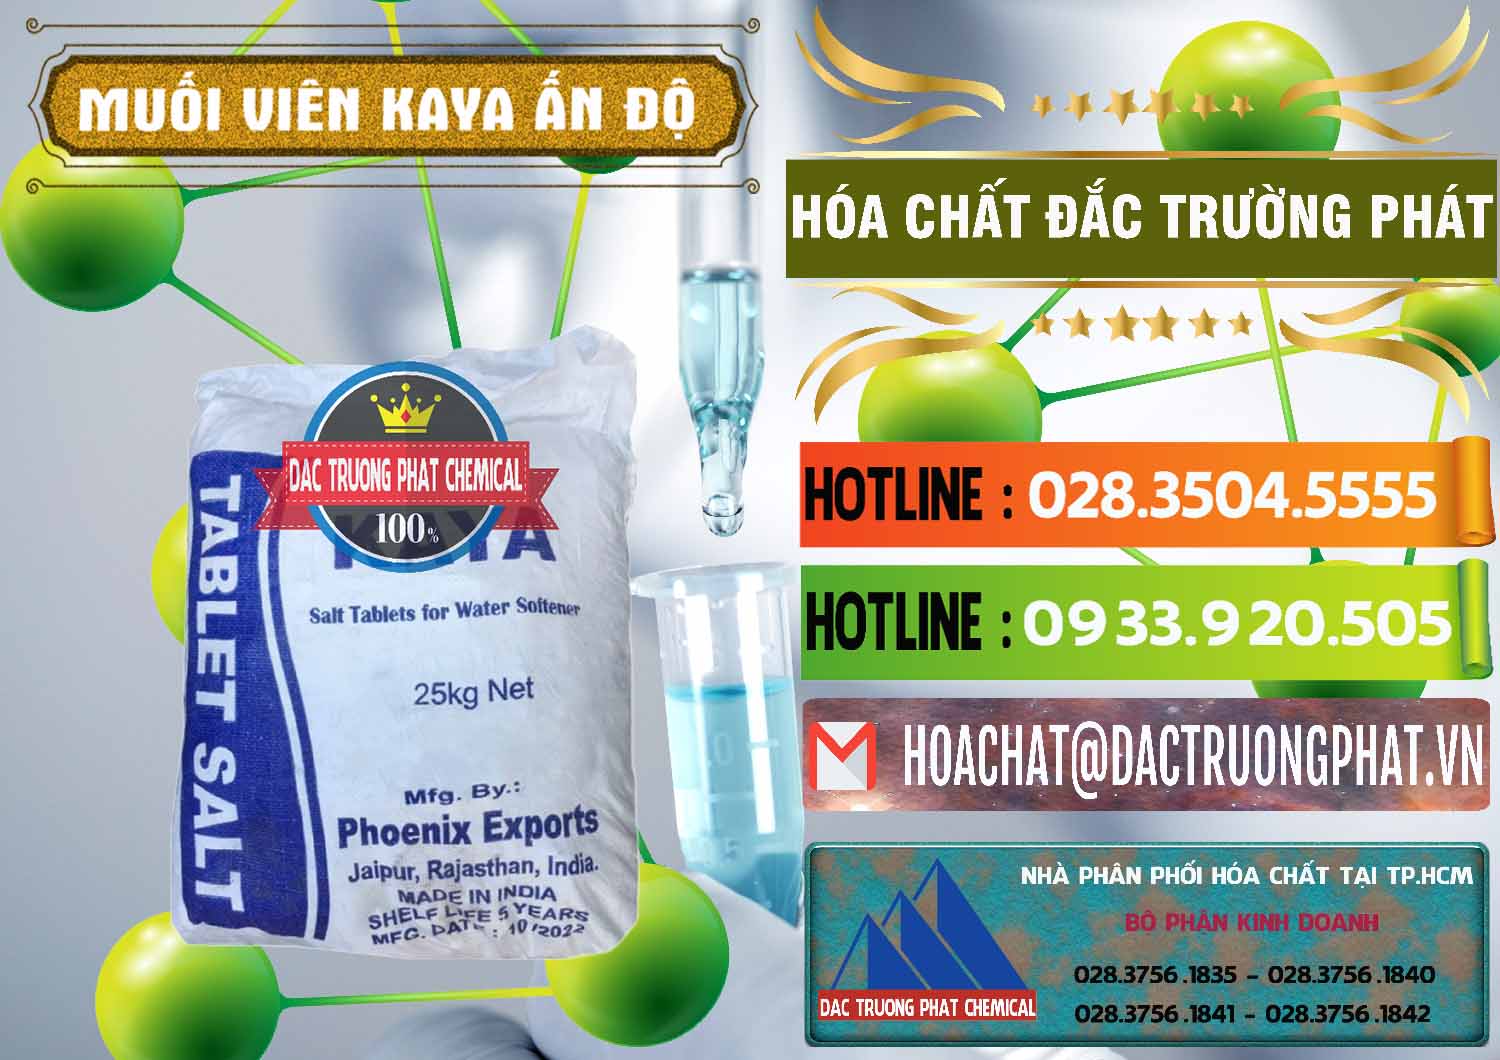 Phân phối & bán Muối NaCL – Sodium Chloride Dạng Viên Tablets Kaya Ấn Độ India - 0368 - Cty chuyên cung cấp ( kinh doanh ) hóa chất tại TP.HCM - cungcaphoachat.com.vn